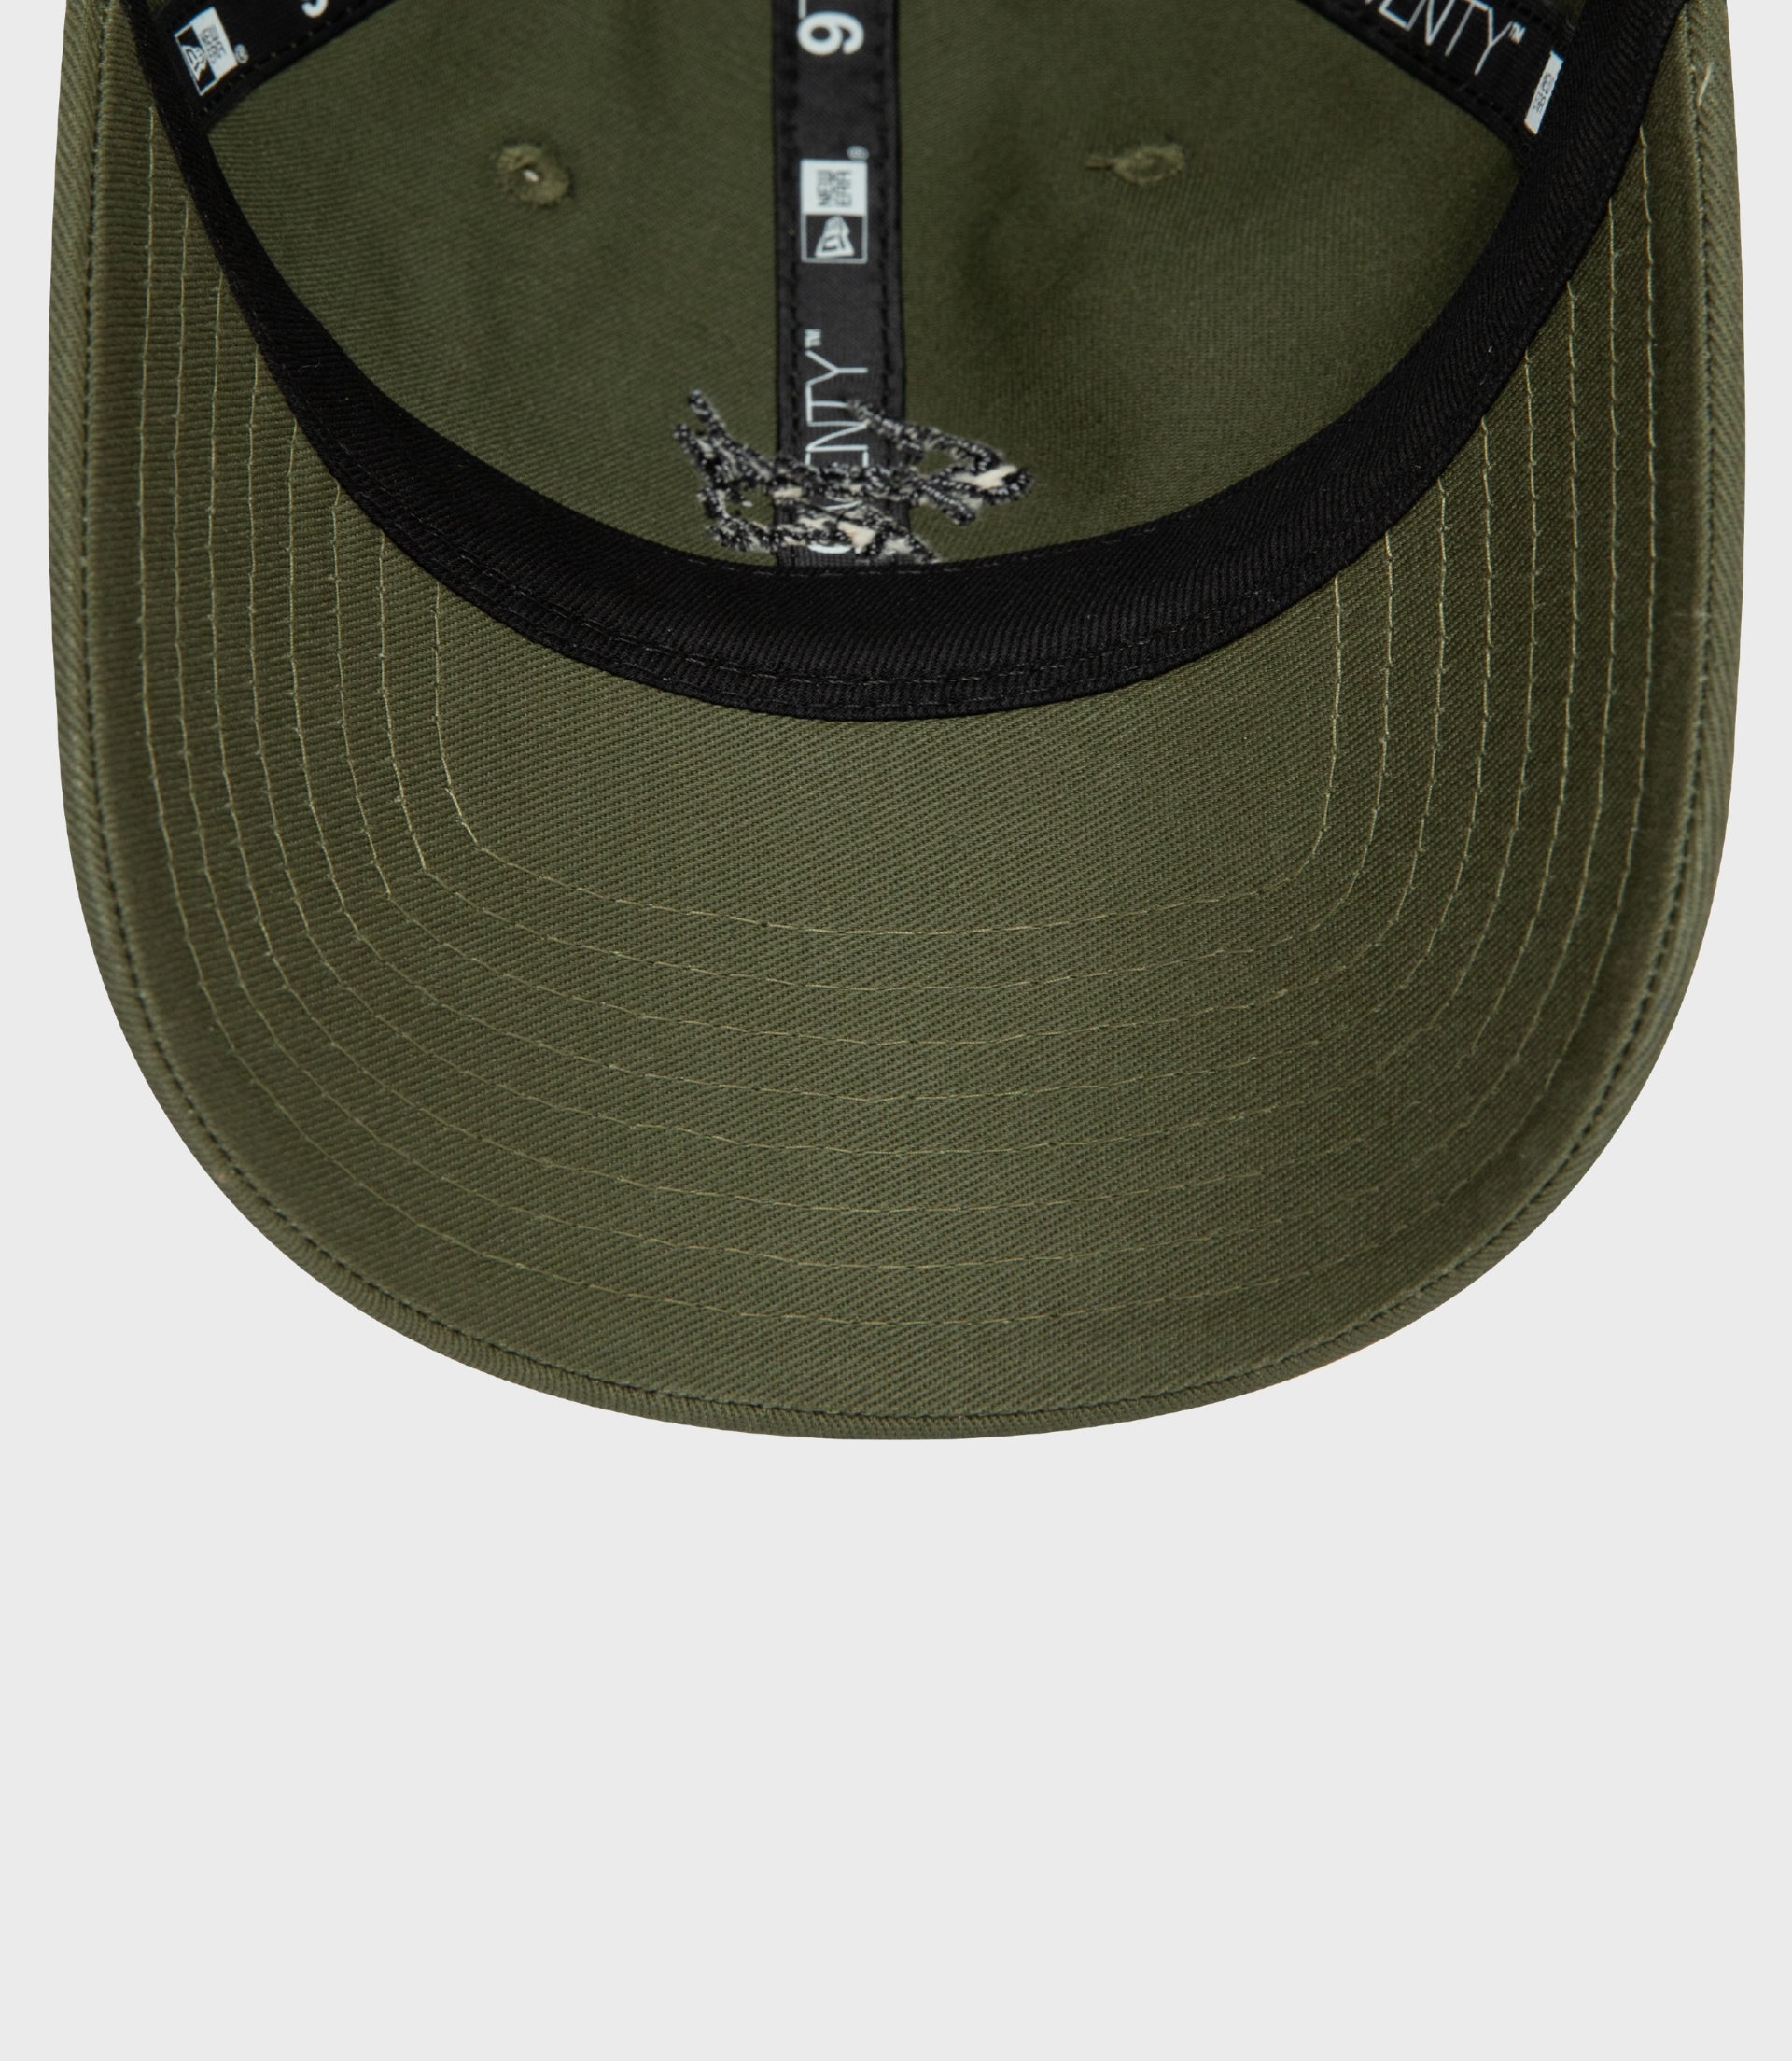 Kiwi Emblem 9Twenty® Cap - New Era